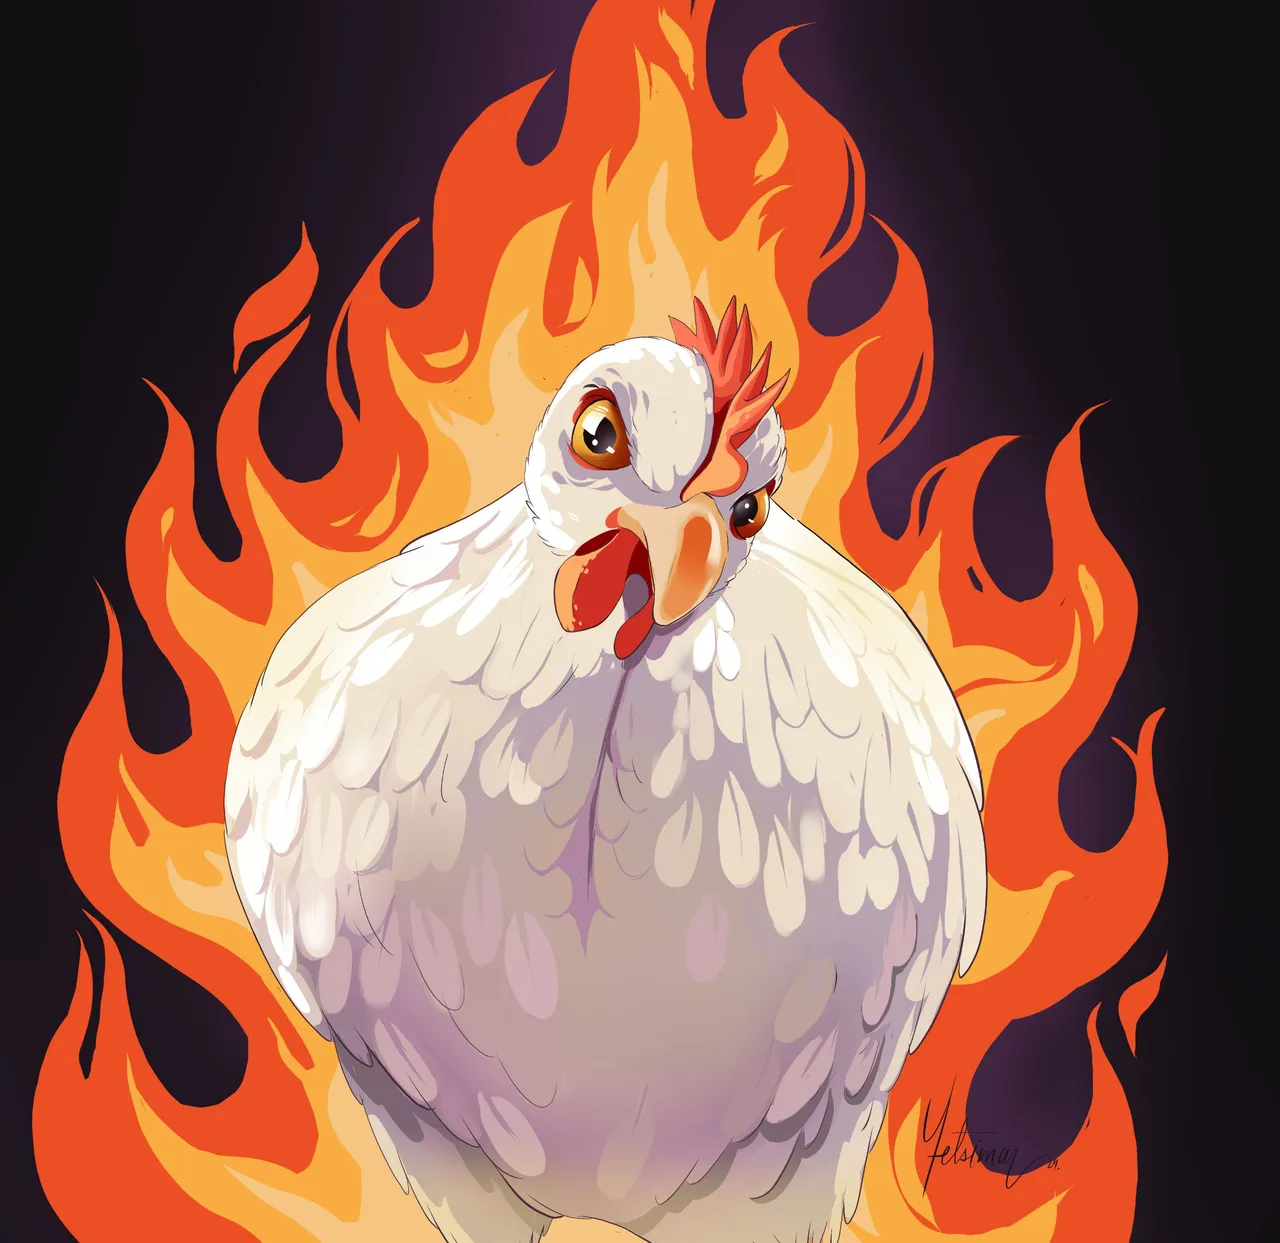 furious chicken.jpg